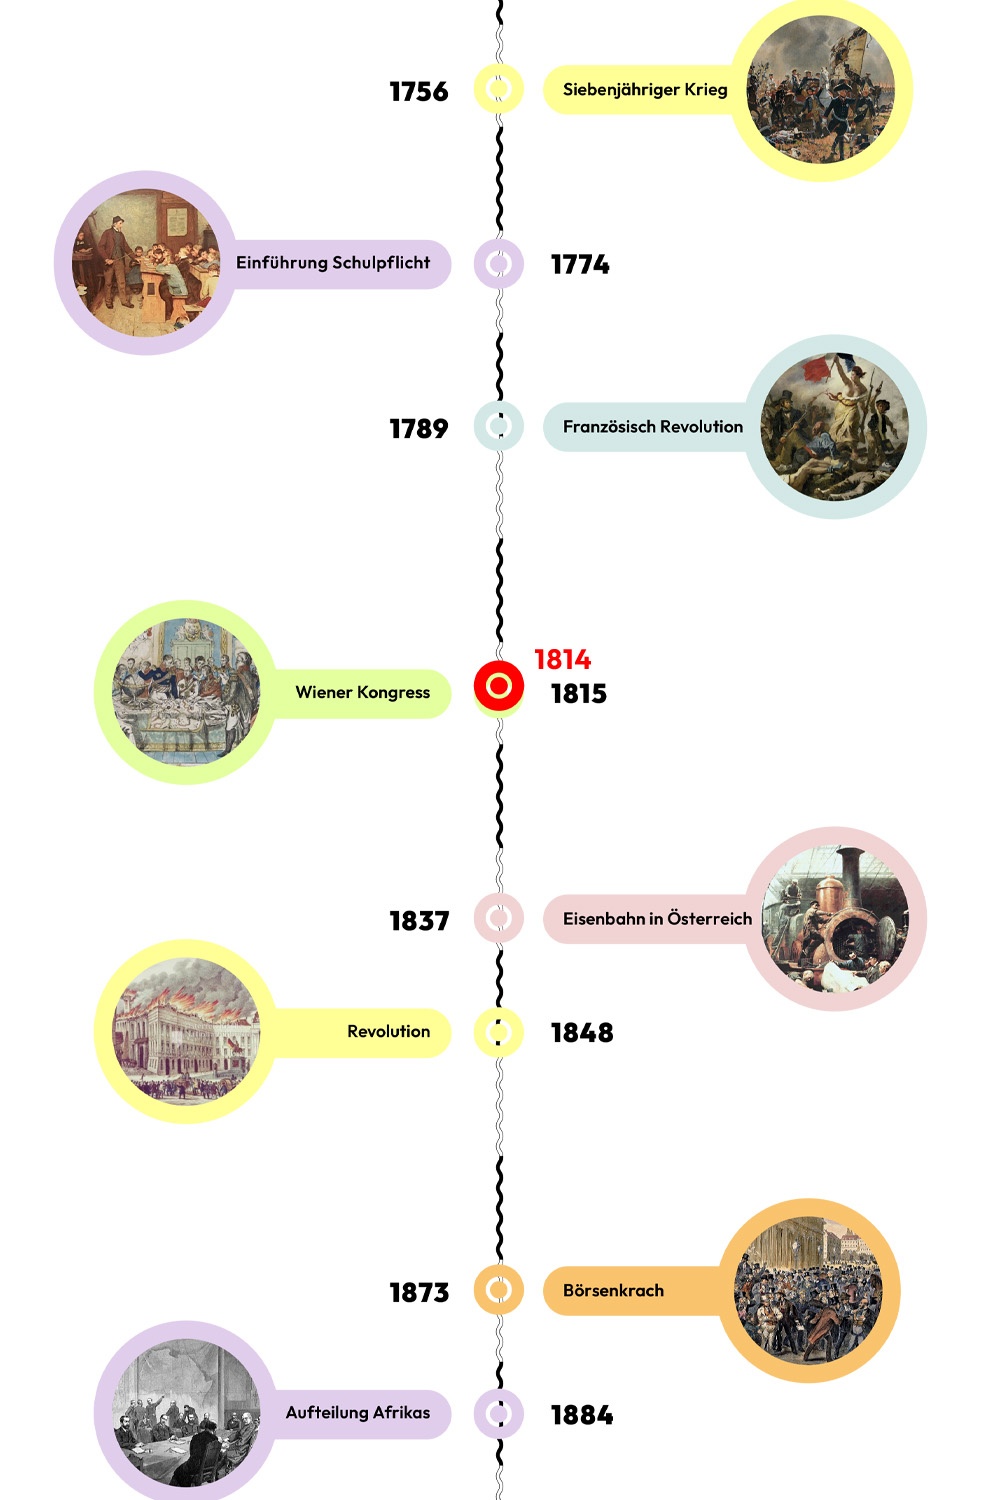 Zeitstrahl mit historischen Ereignissen - 1814 ist hervorgehoben © wasbishergeschah.at